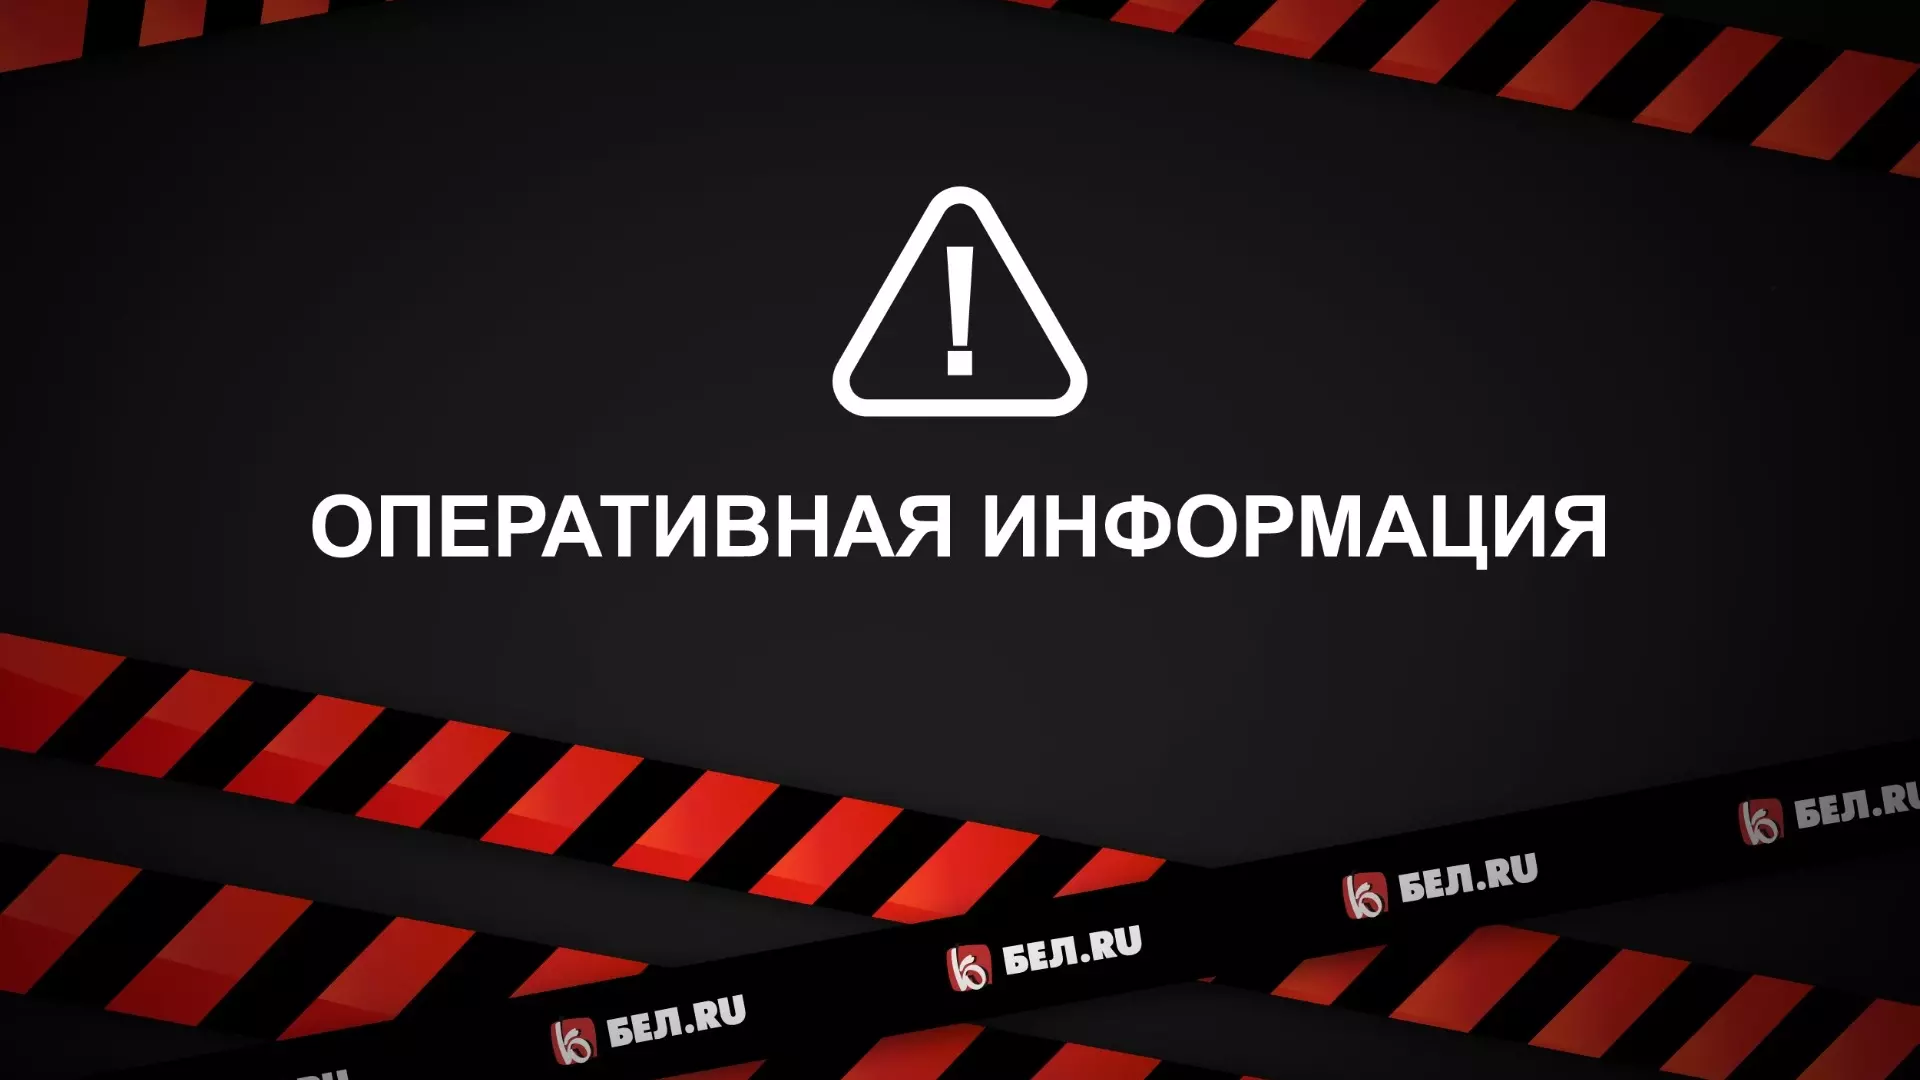 В Белгороде запустили сирену и объявили о ракетной опасности